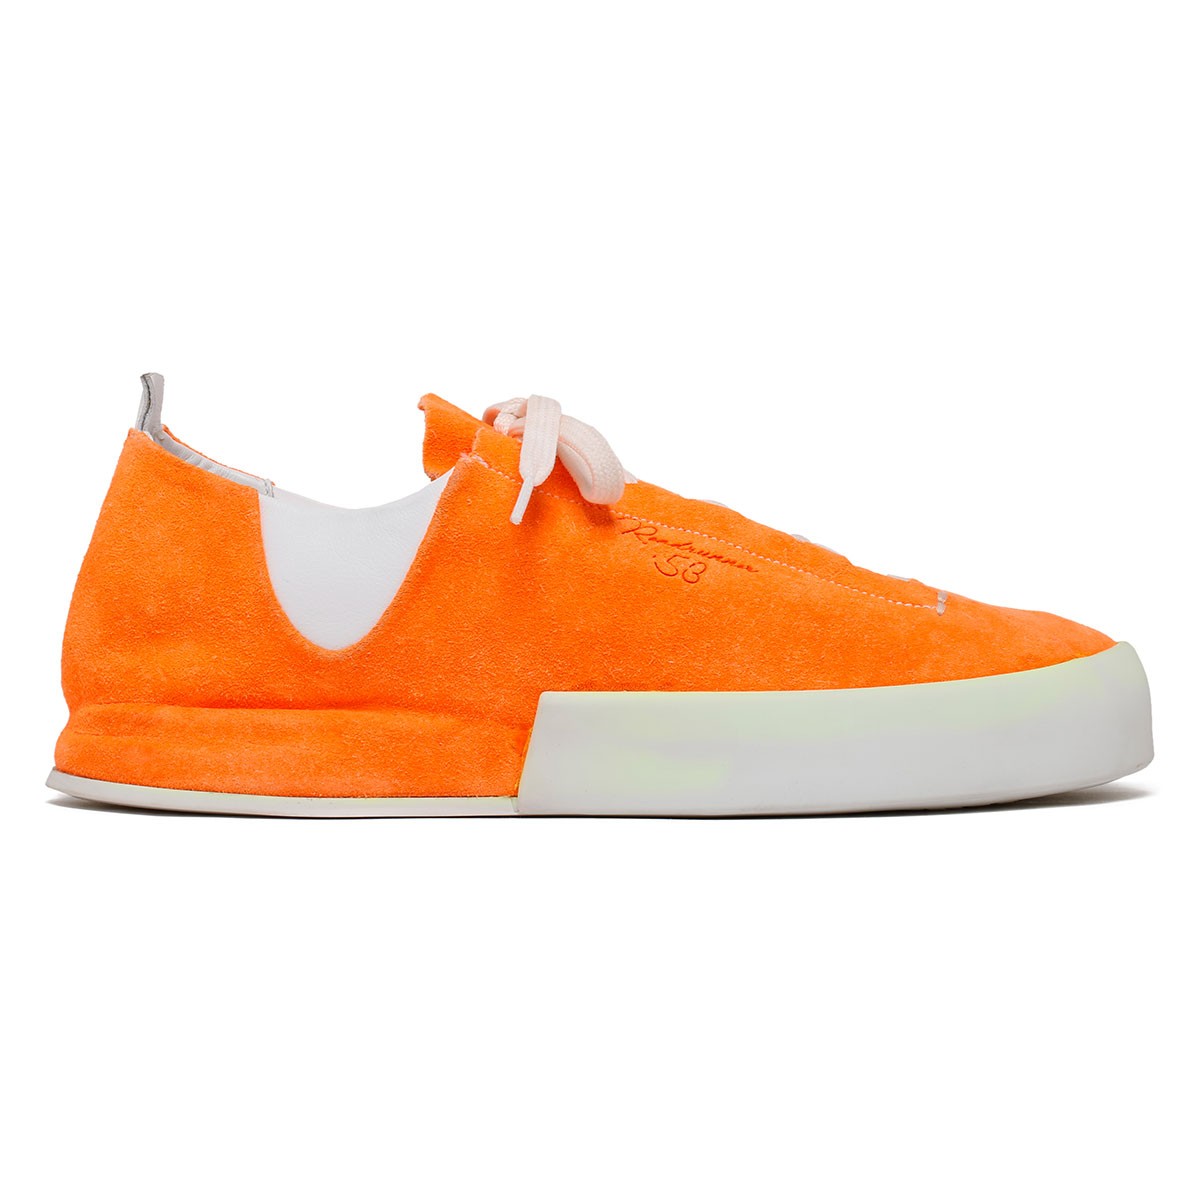 Nicosia orange velvet sneakers